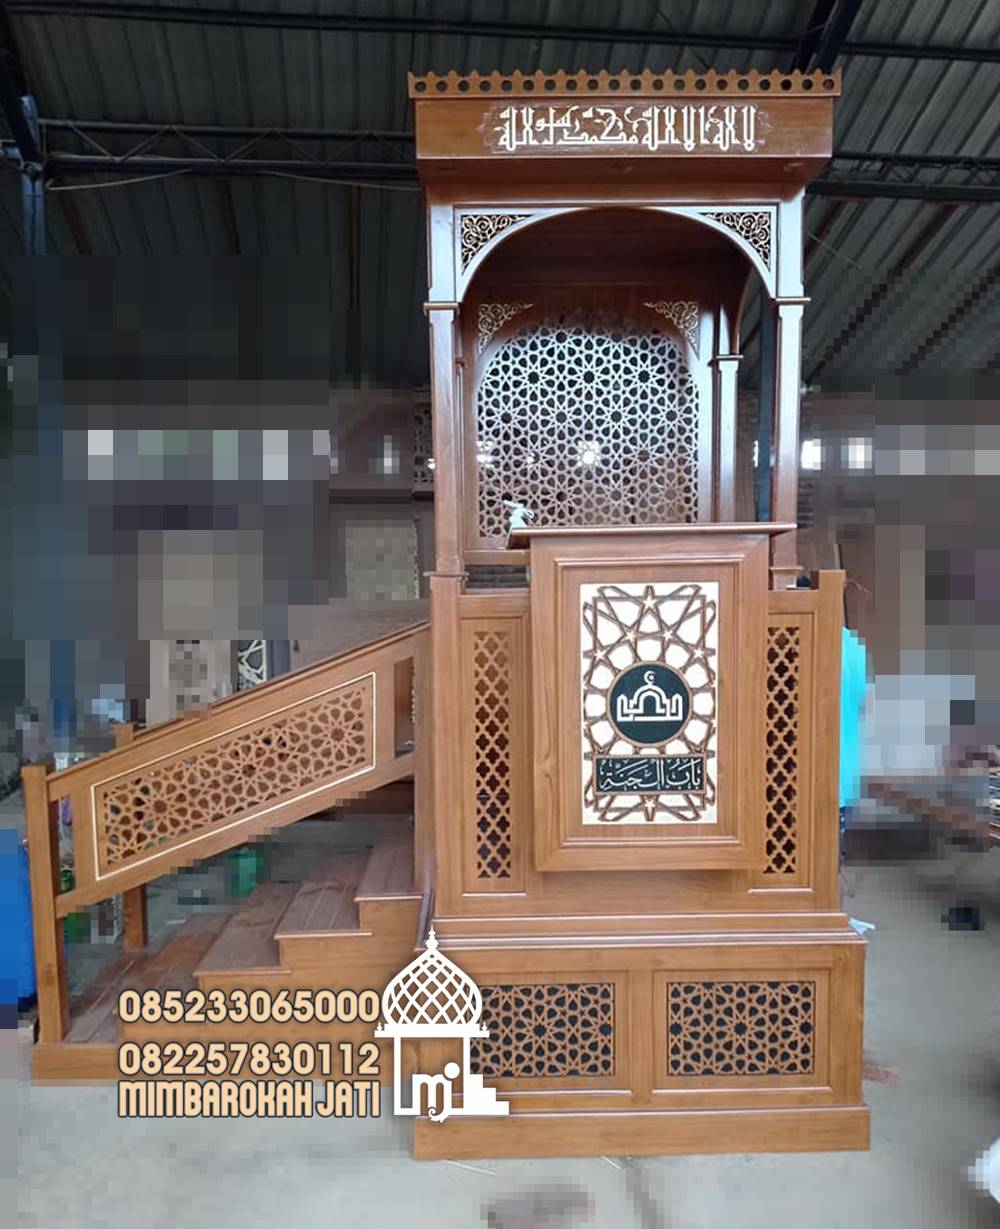 Mimbar Kayu Ornamen Arabic Masjid Daerah Balikpapan